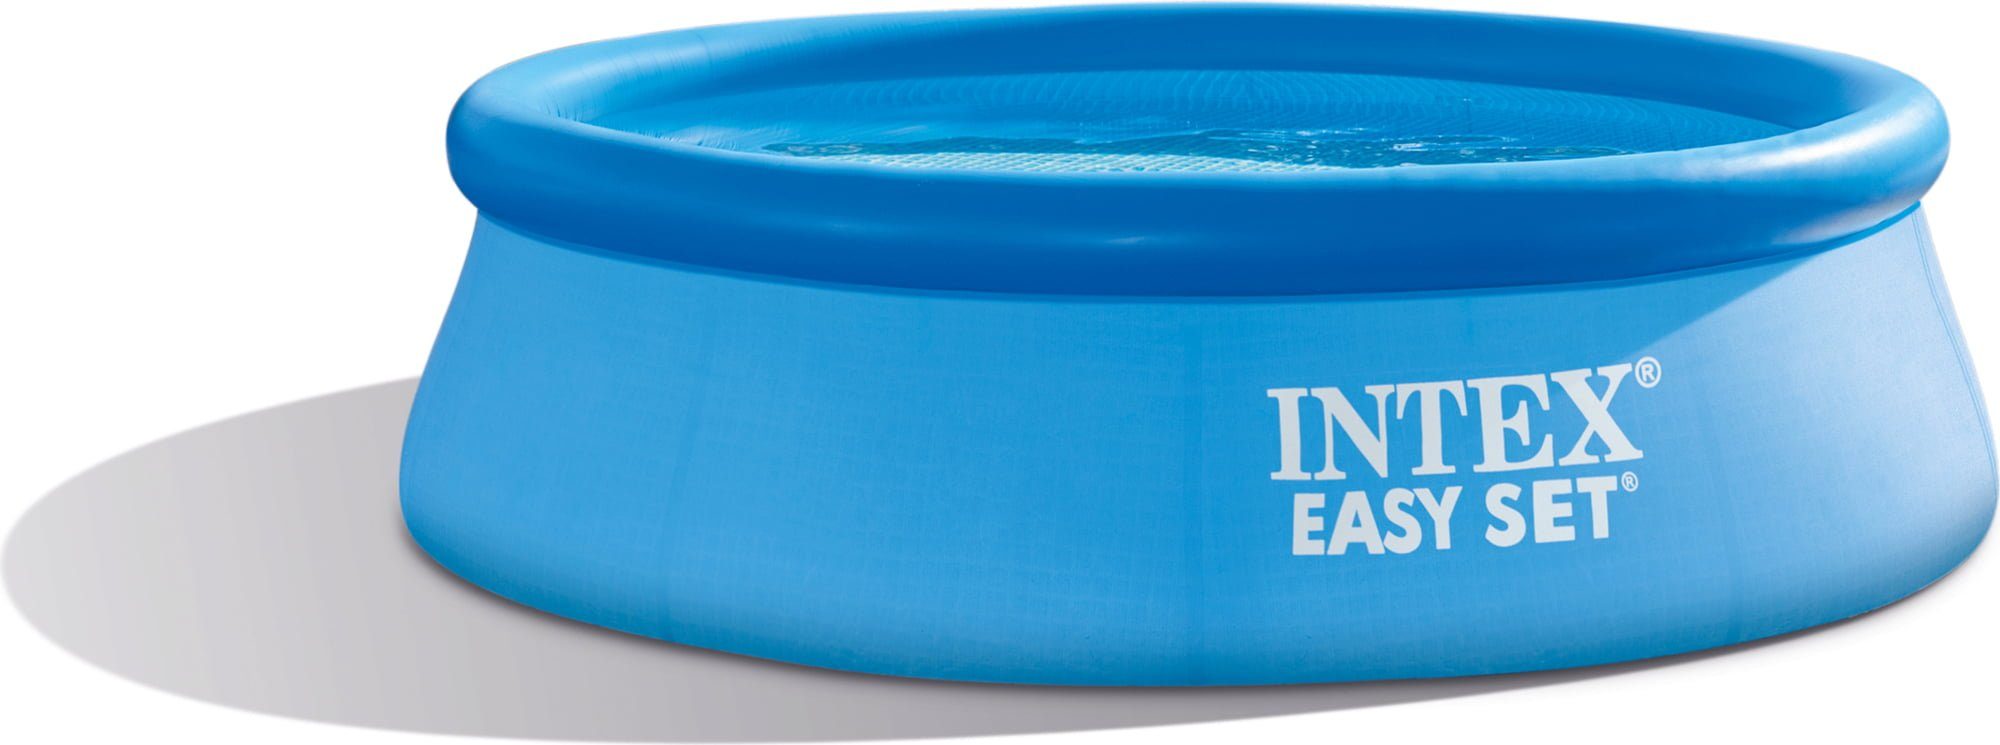 Intex Pool Intex Easy Set Pool - Aufstellpool - Ø 305 x 76 cm - Mit Filteranlage, 305x76cm & kurze Aufbauzeit & gute Qualität